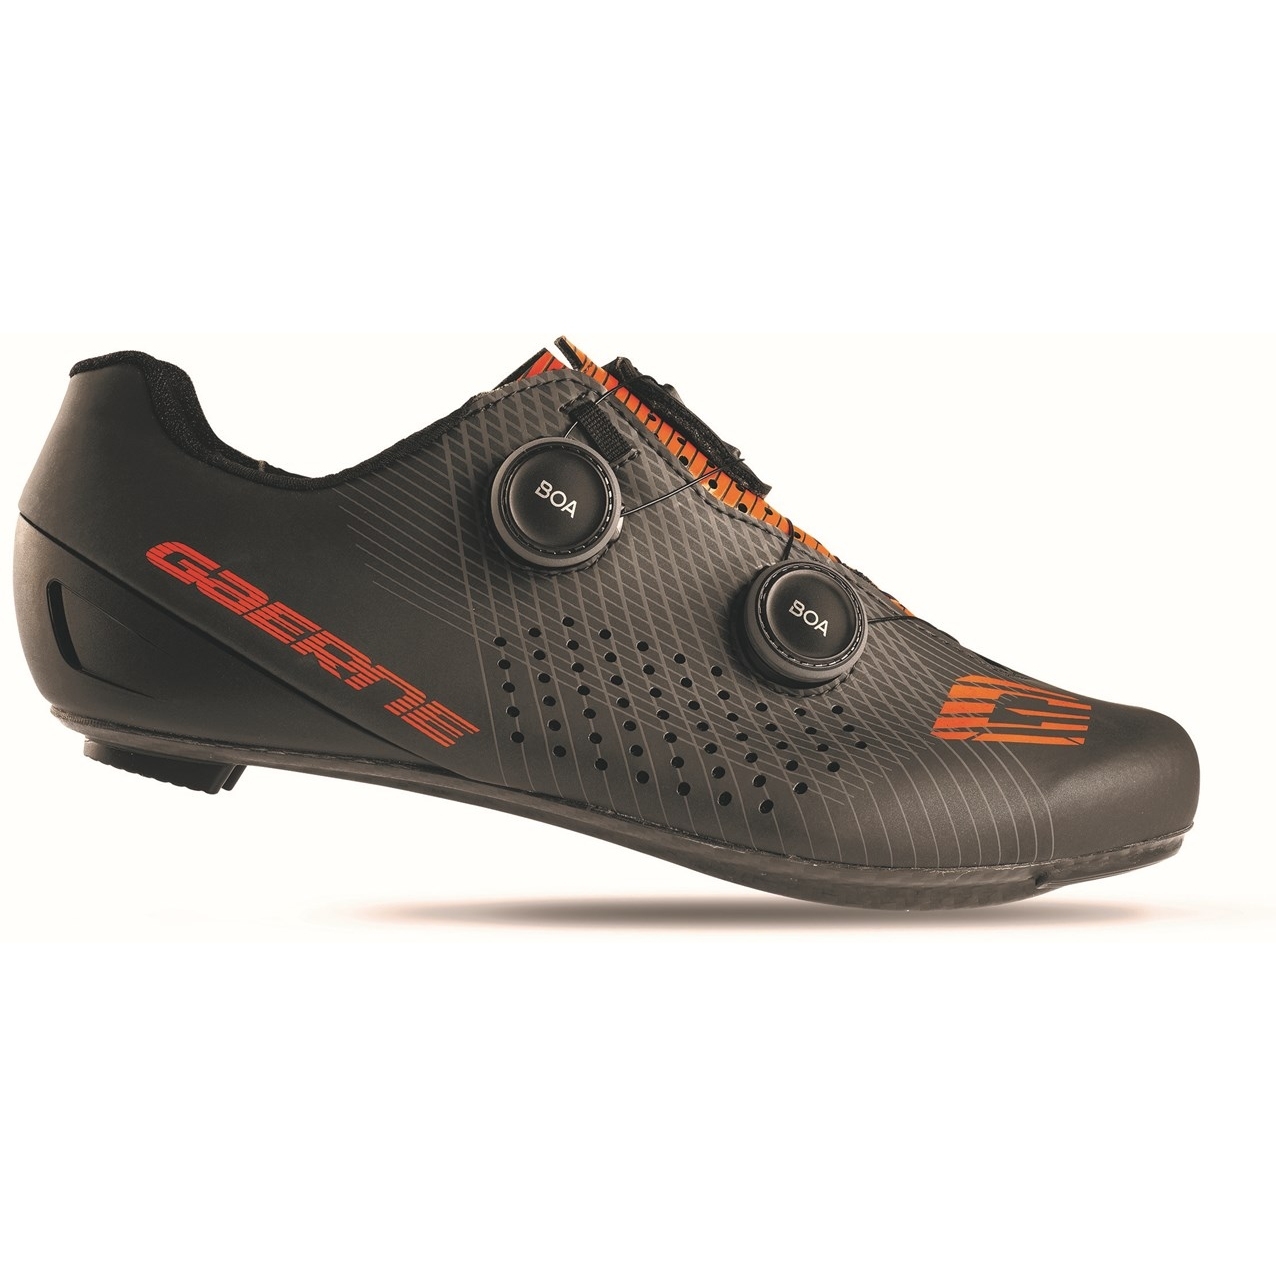 Productfoto van Gaerne G. FUGA Racefietsschoenen - zwart/oranje